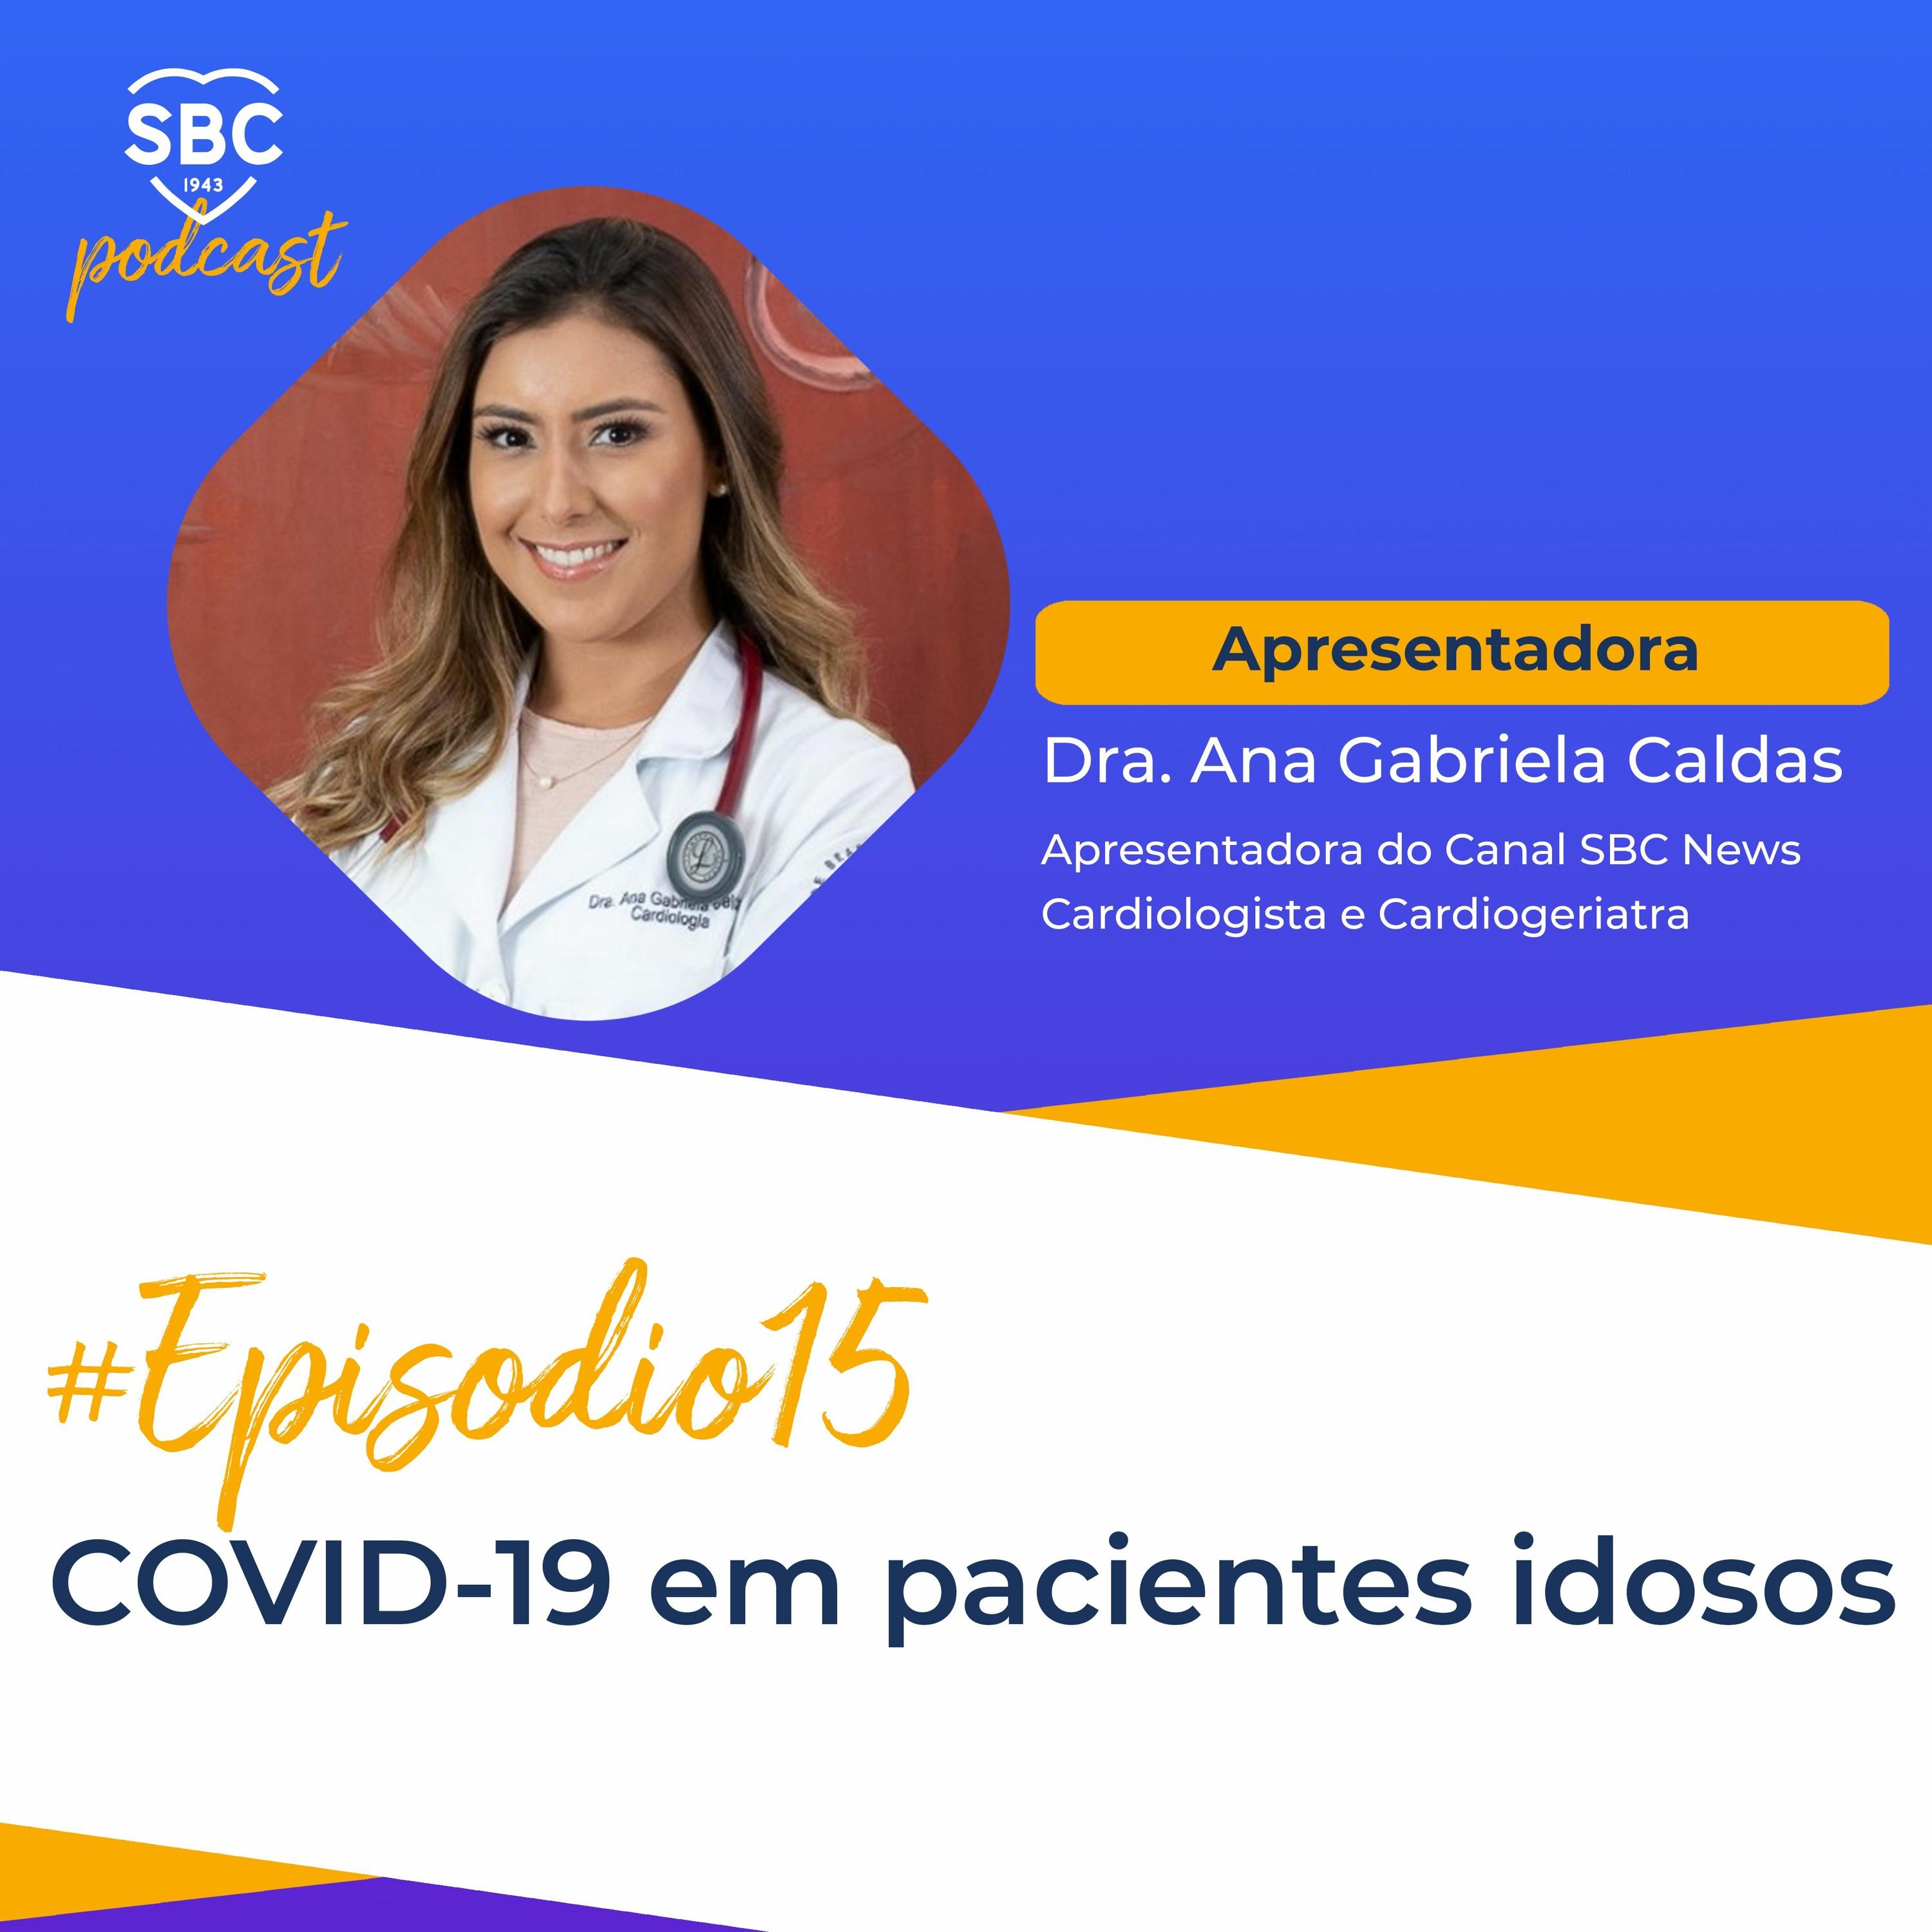 Neste episódio, a Dra. Ana Gabriela Calda aprensenta pontos importantes a respeito da COVID-19 em pacientes idosos.